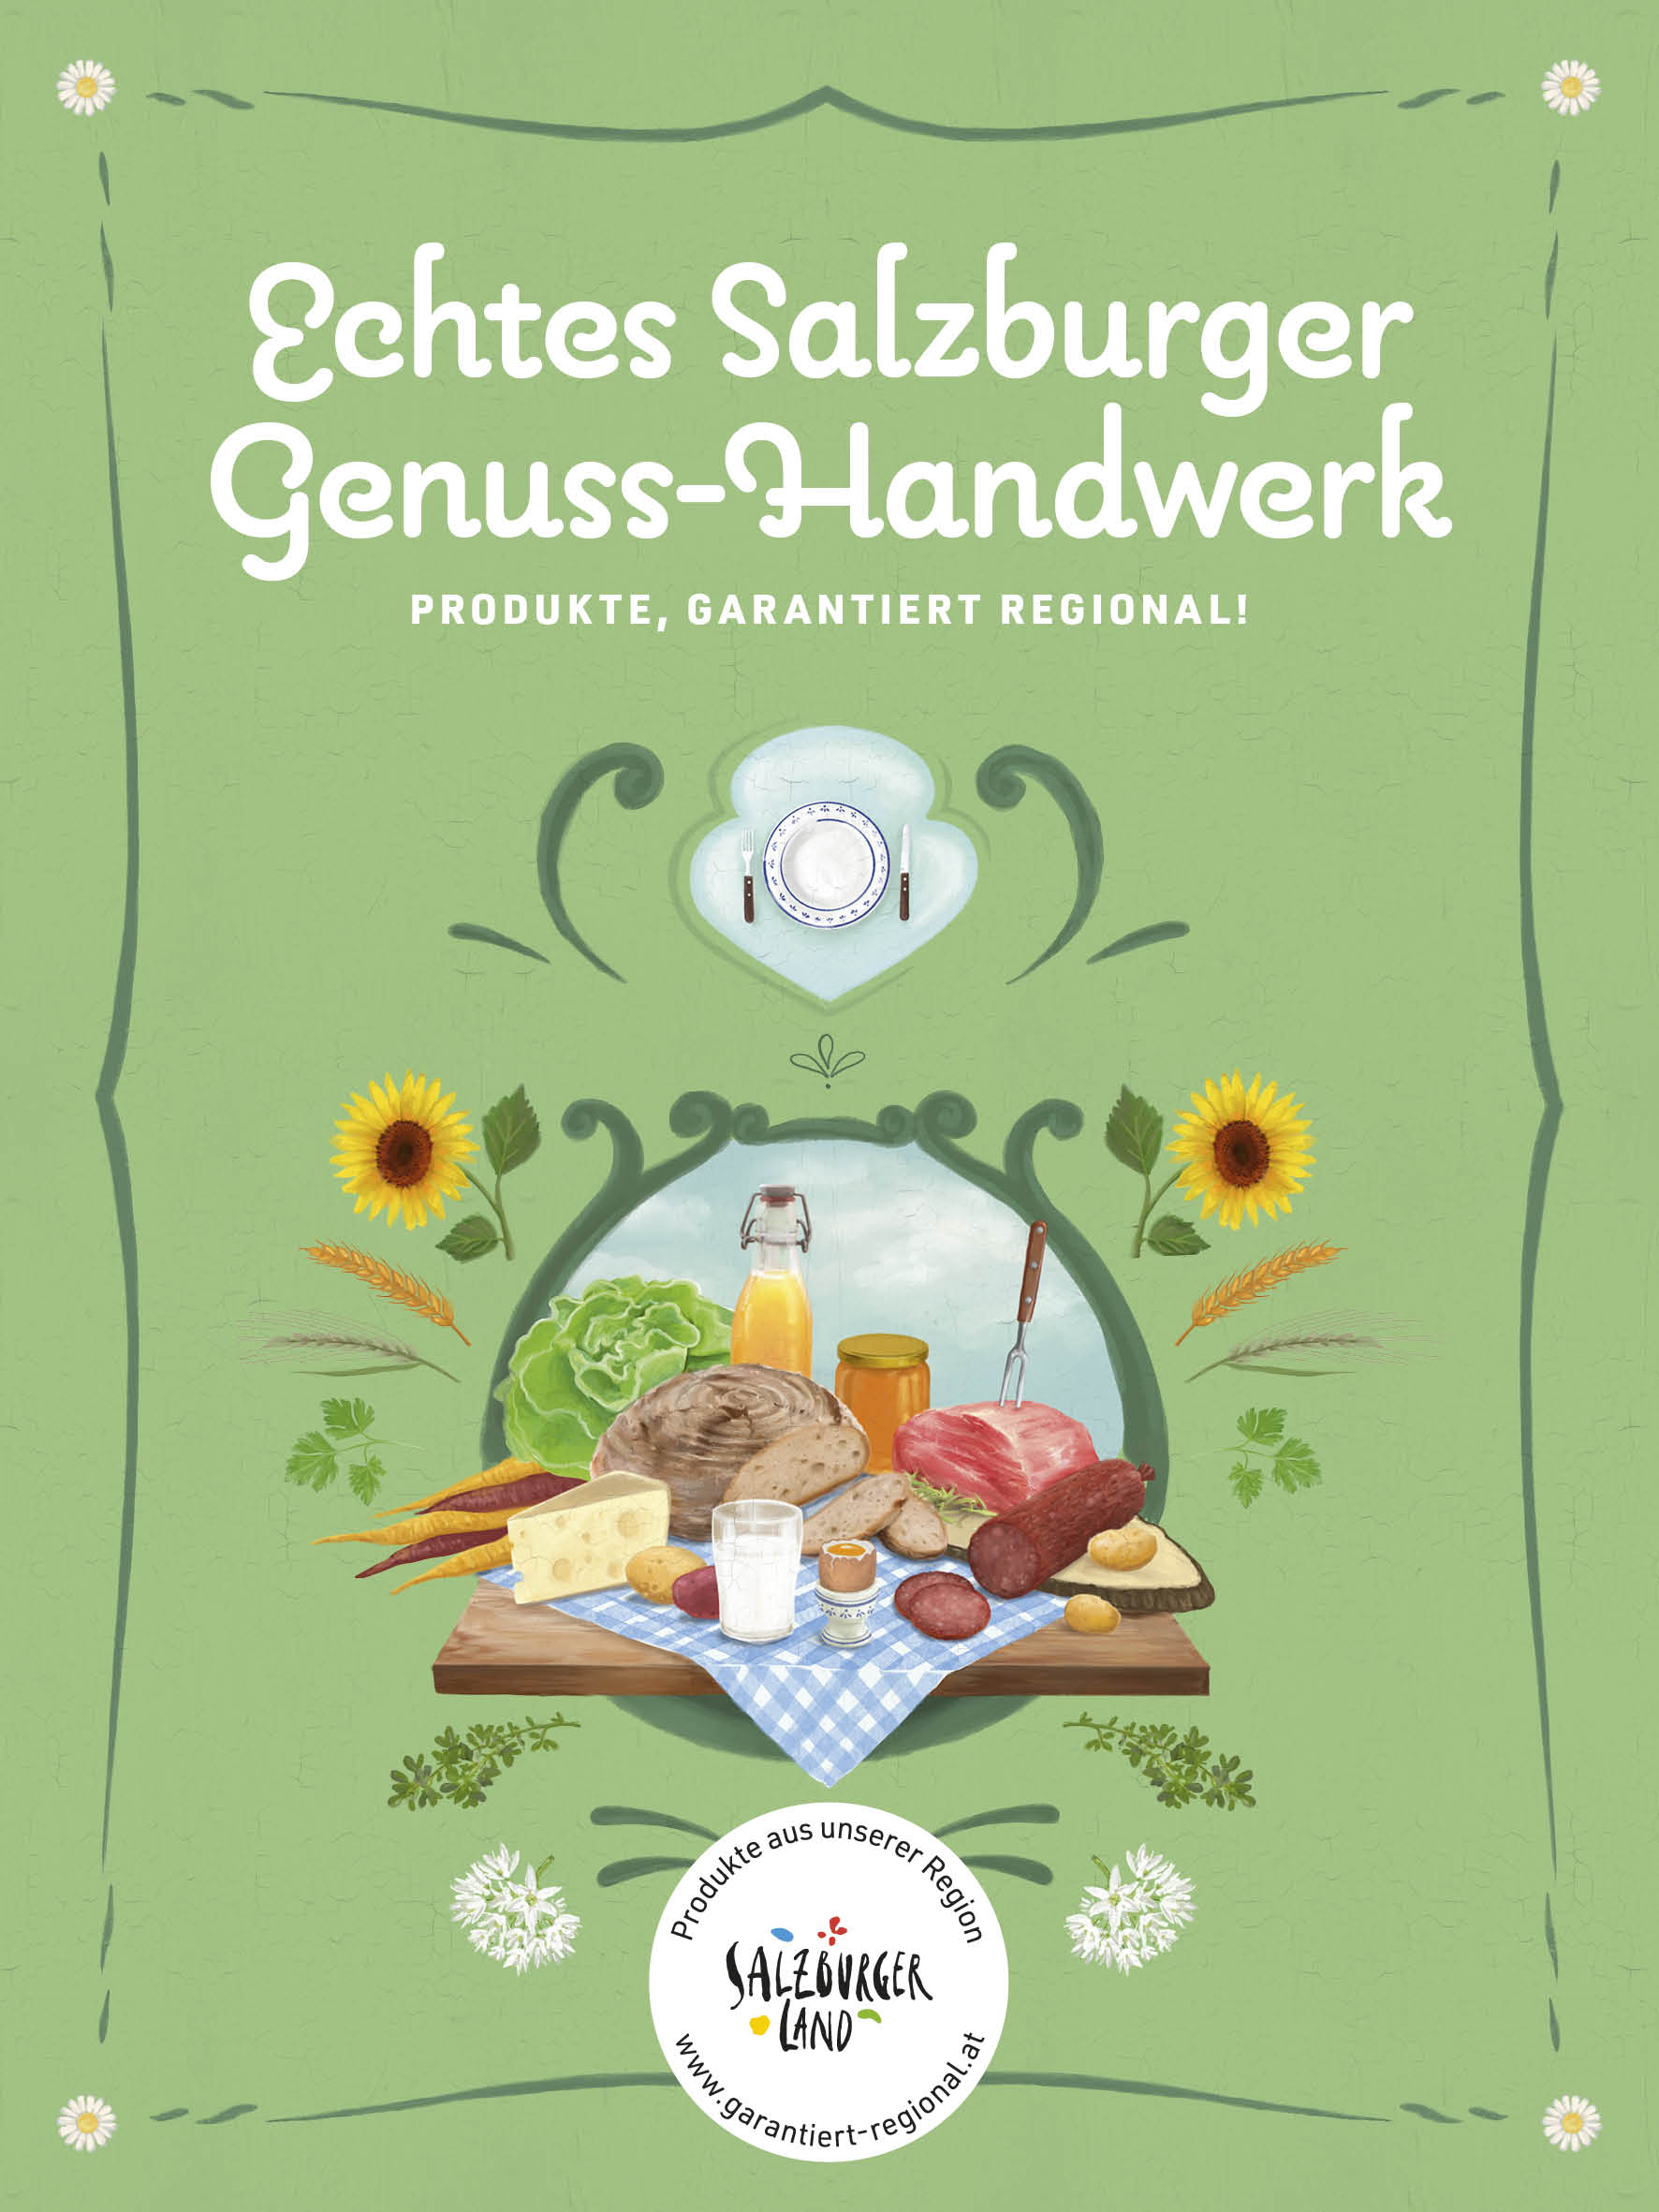 Hanslbauer - Michael Gassner bei Salzburg schmeckt